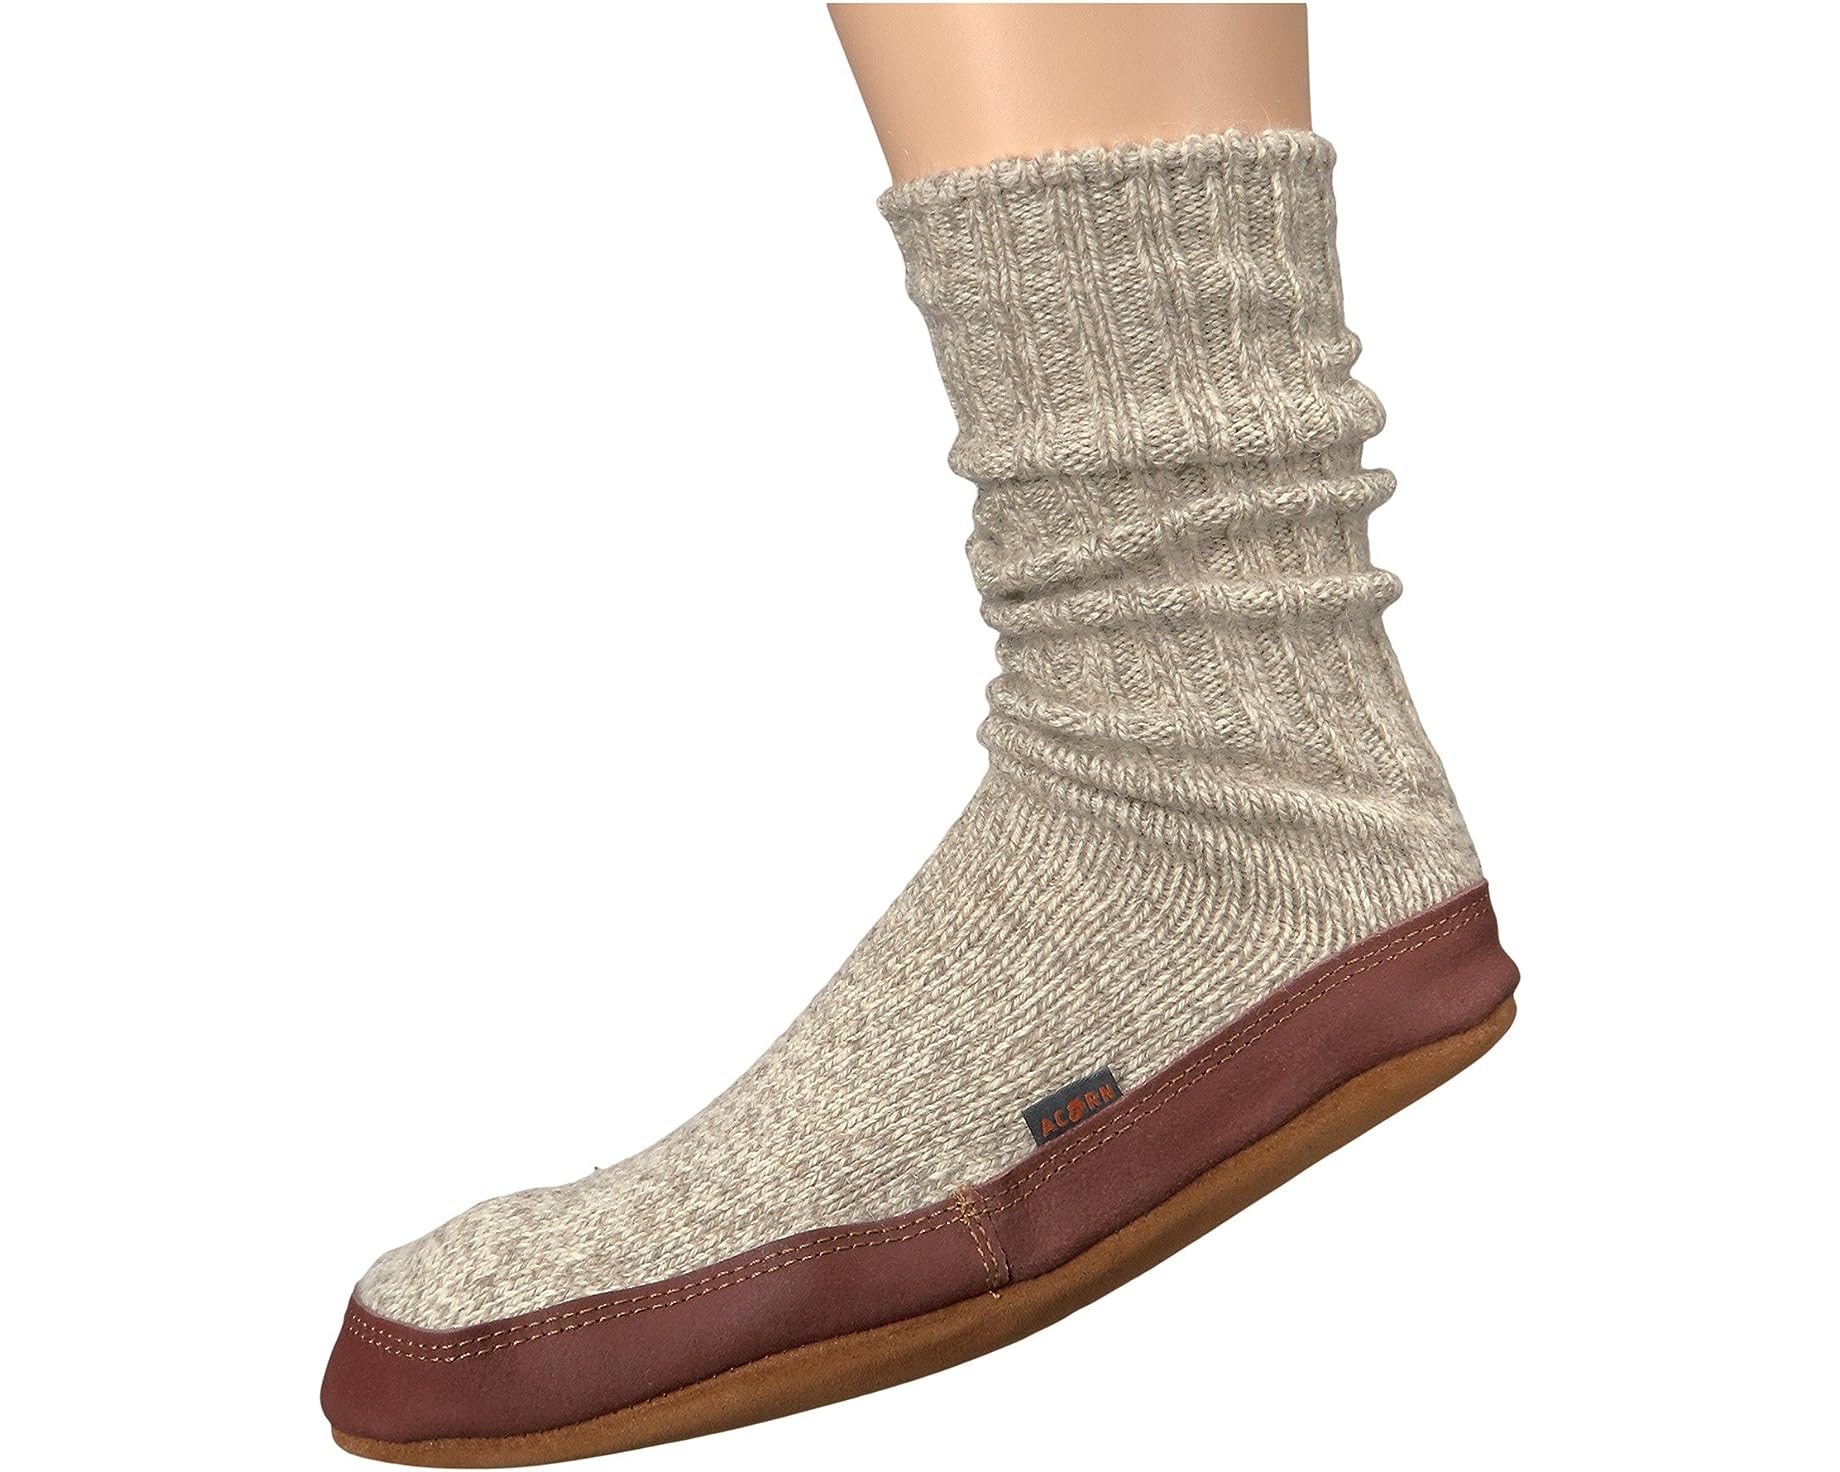 Acorn Women’s & Men’s Original Slipper Socks $15.60, Acorn Men's Moc $14.70, More + Free Shipping